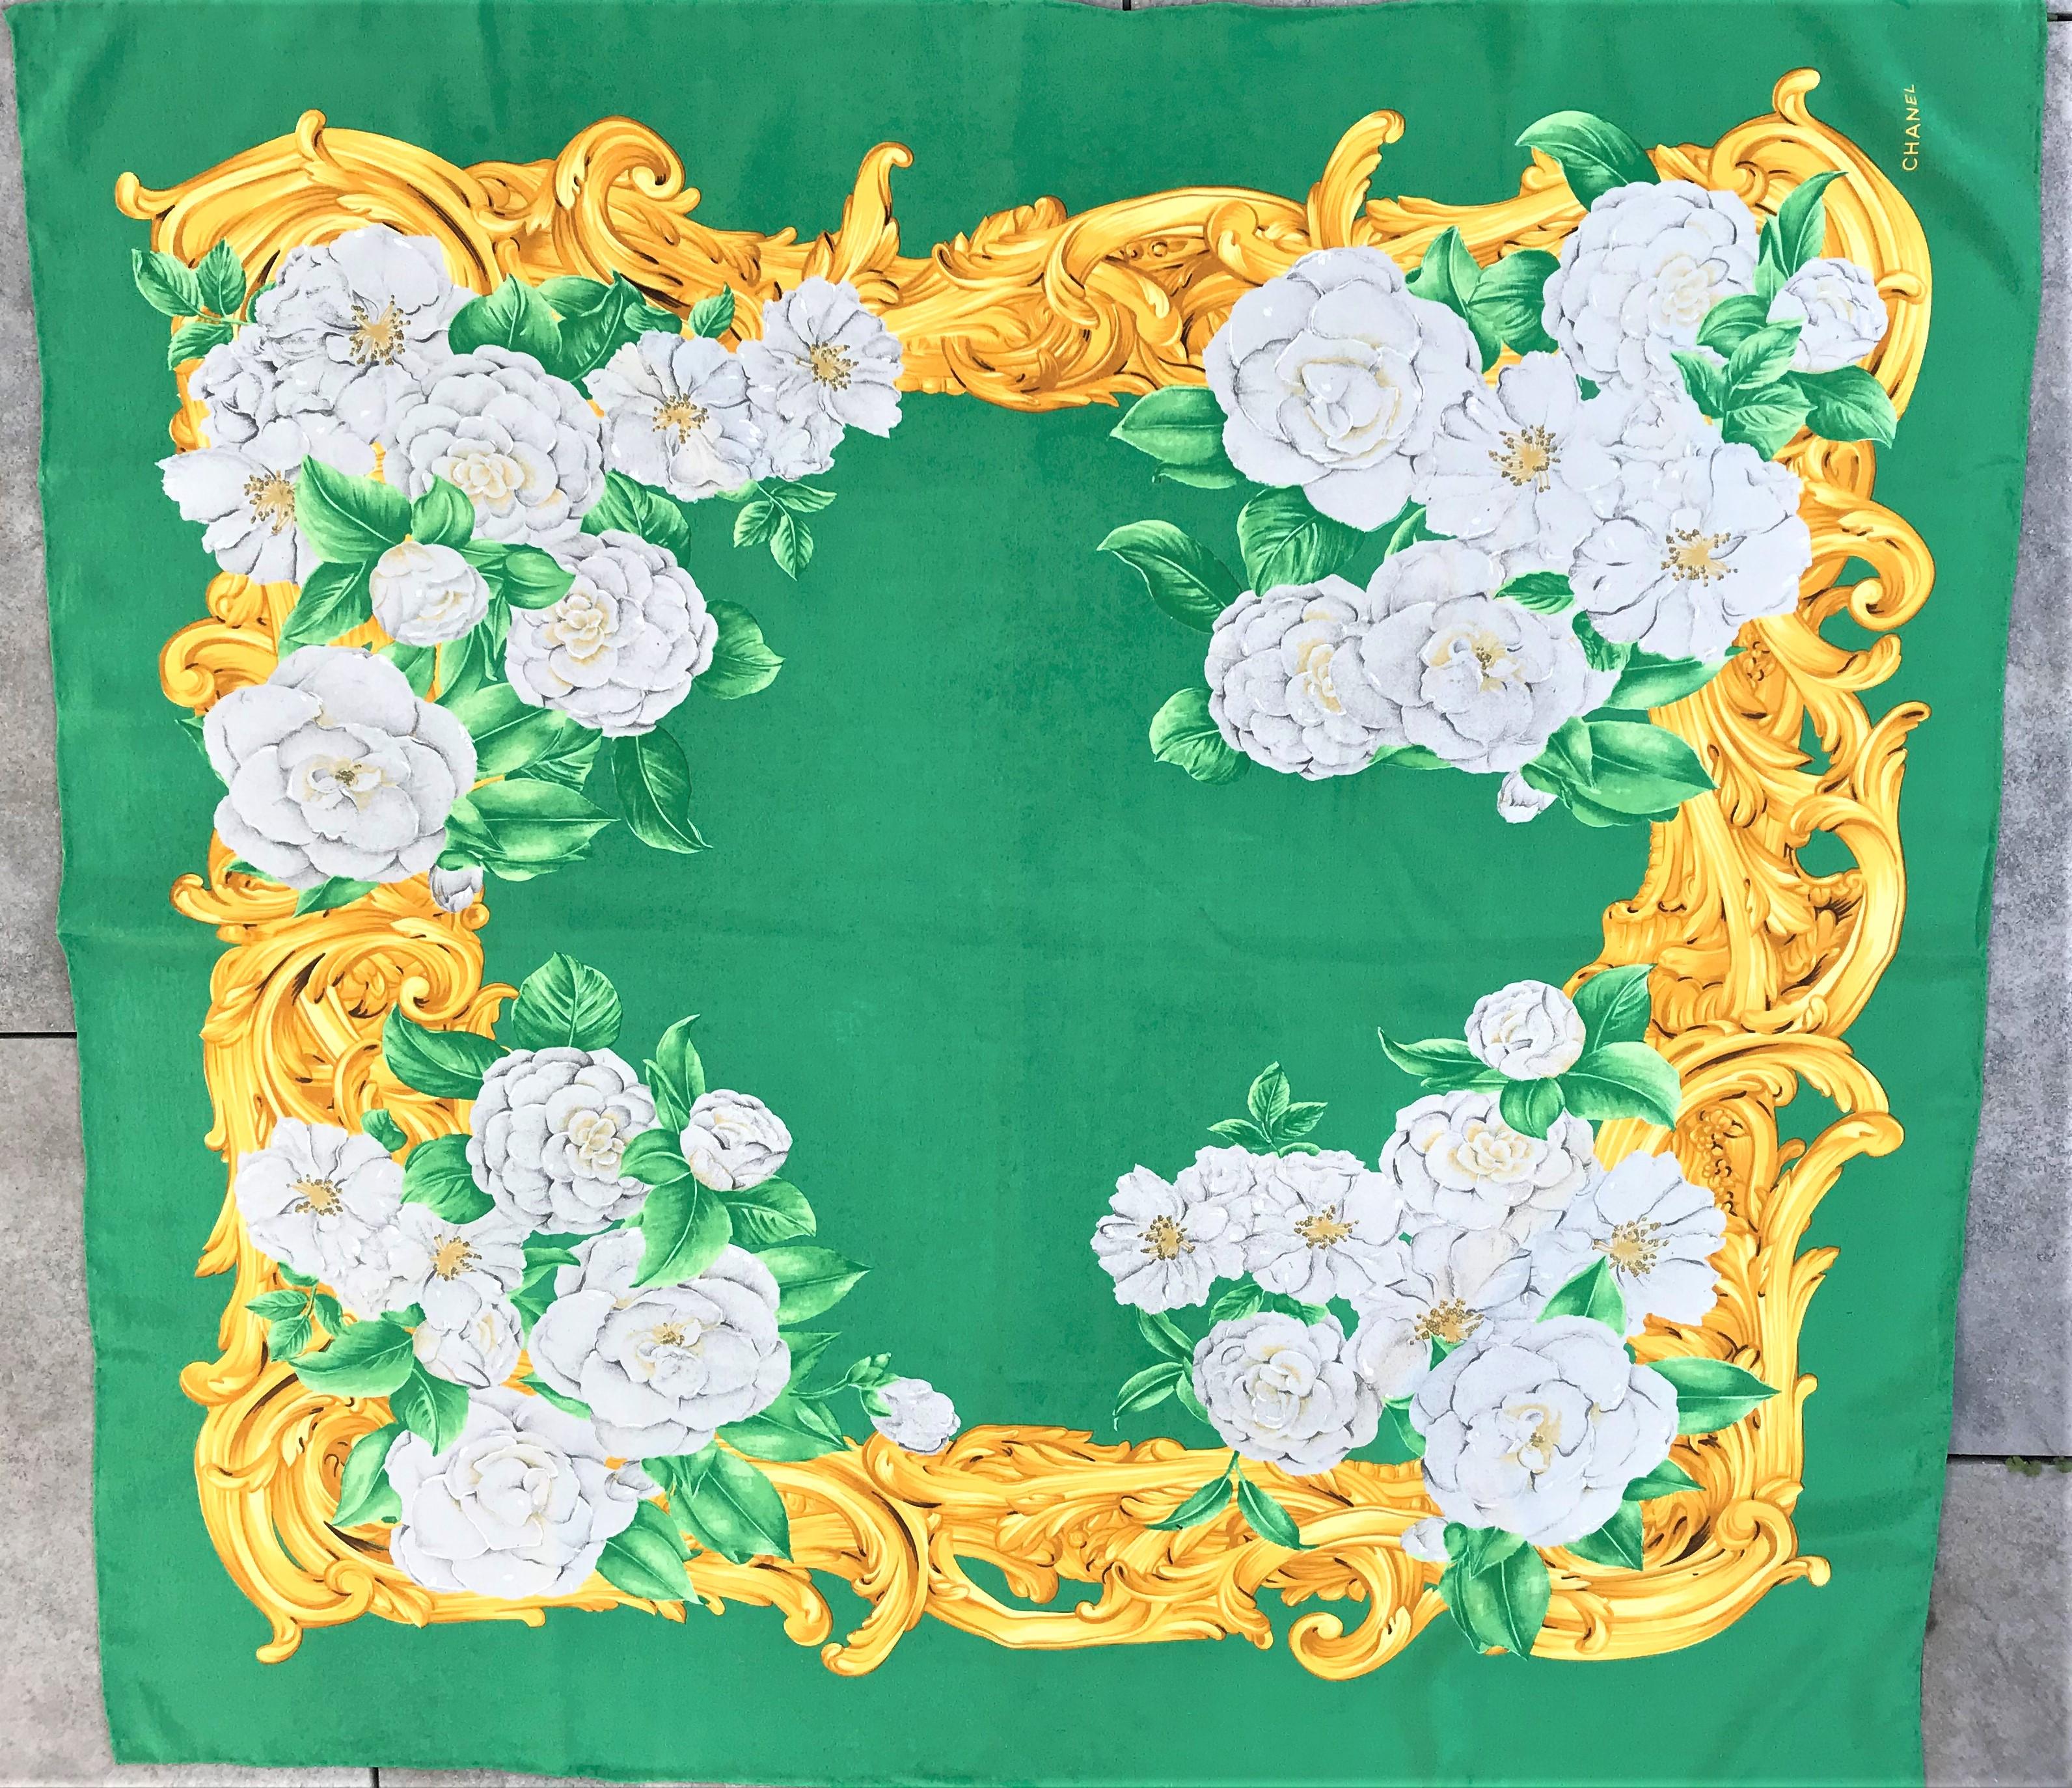 Foulard vintage en soie de Chanel imprimé sur fond vert de la fleur préférée de Coco Chanel, le Camélia.
Fond vert, différents camélias gris clair à feuilles vertes et rocailles dorées bordés. L'écharpe est roulée à la main et en bon état, sans